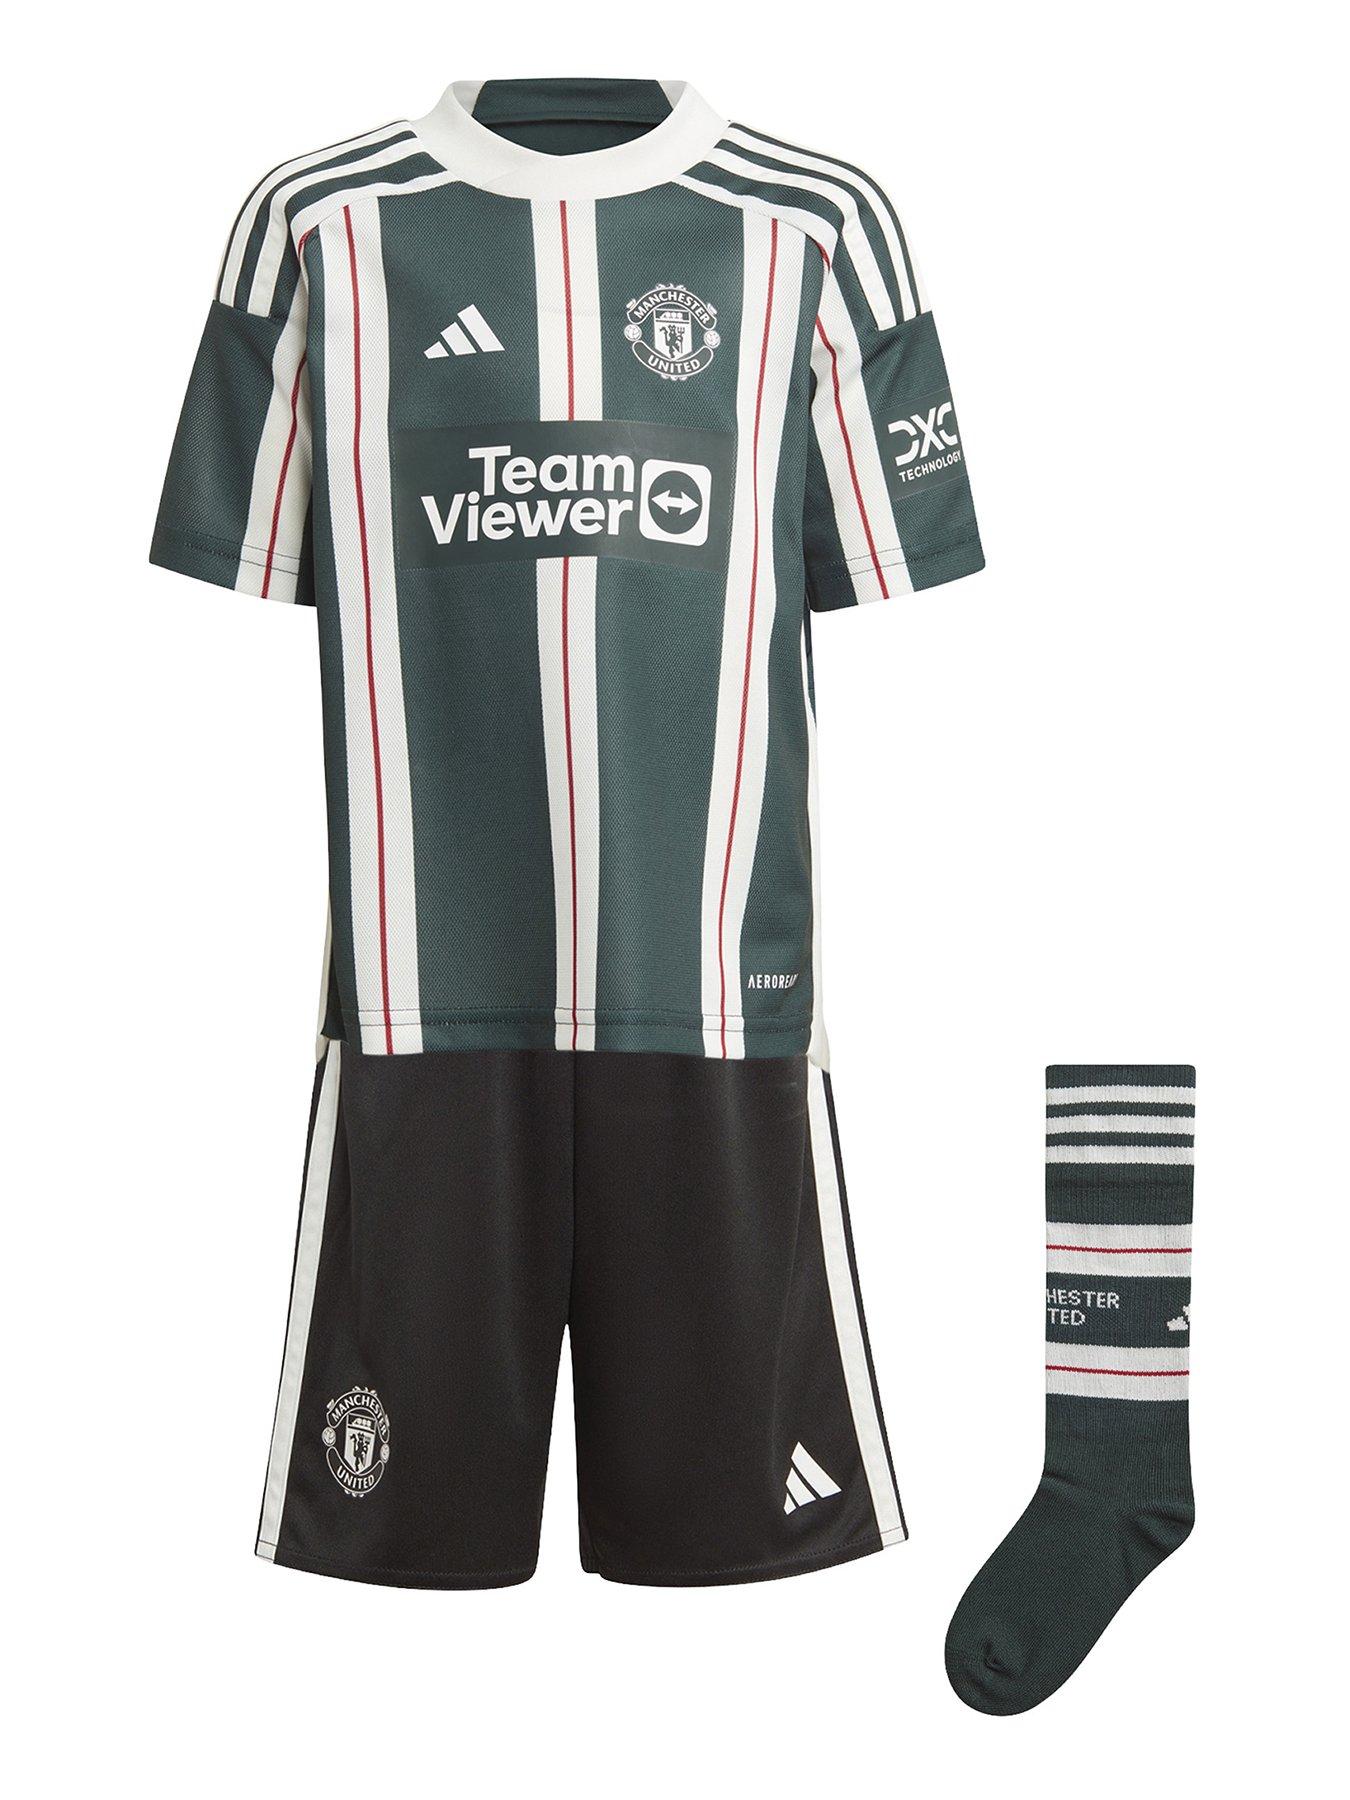 man united kit